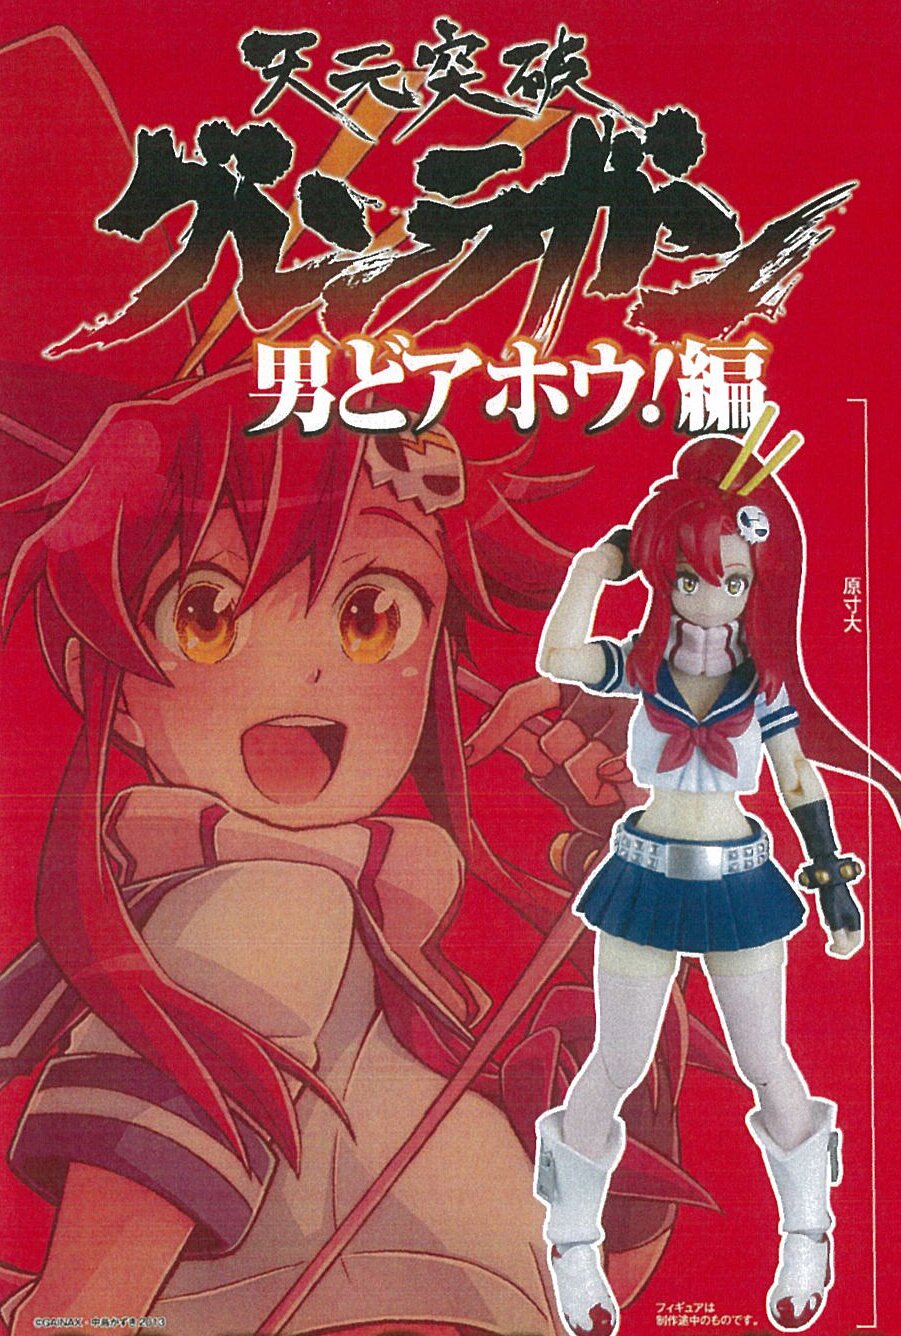 Gurren Lagann Manga/Anime ver.